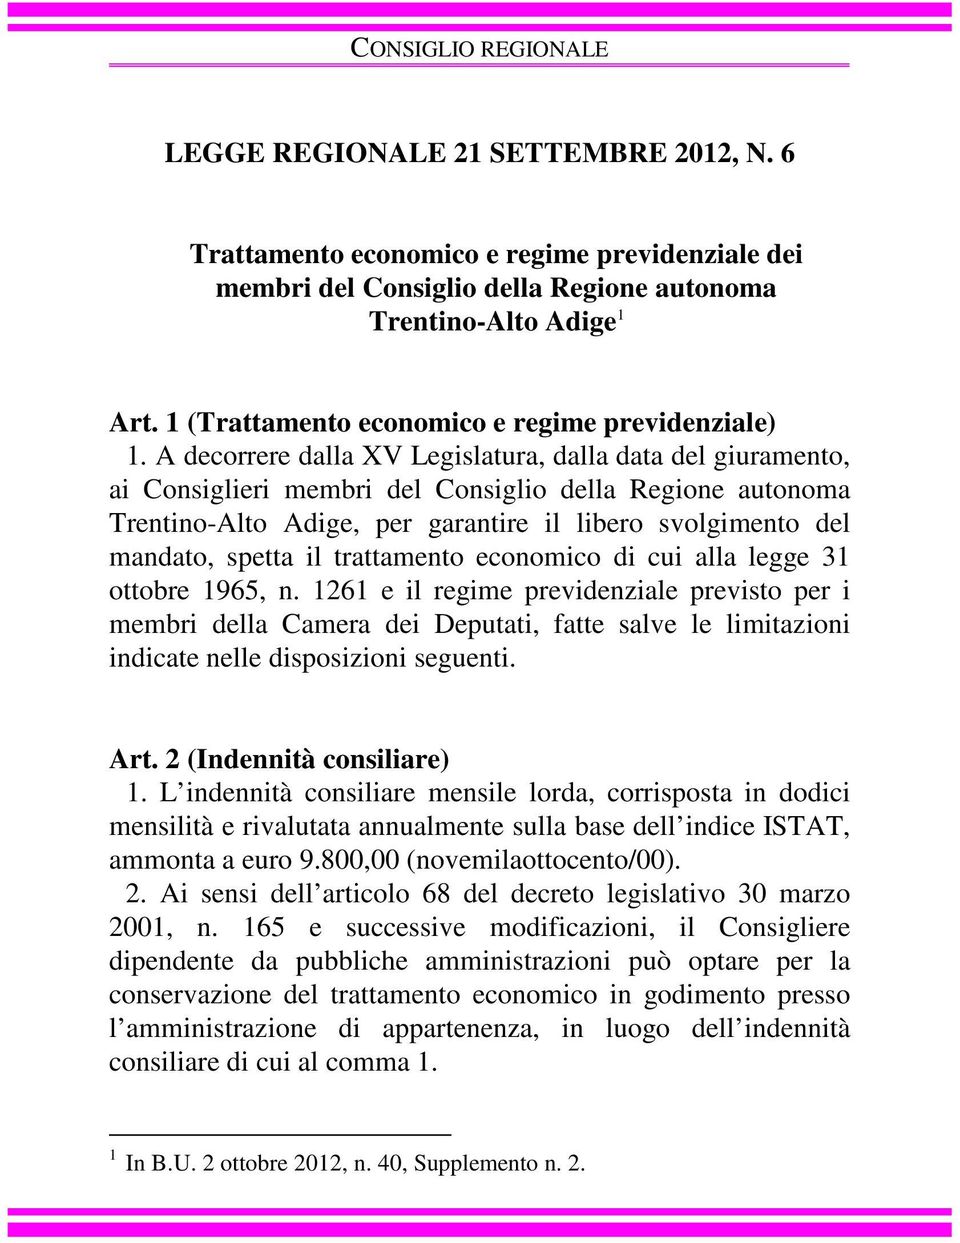 A decorrere dalla XV Legislatura, dalla data del giuramento, ai Consiglieri membri del Consiglio della Regione autonoma Trentino-Alto Adige, per garantire il libero svolgimento del mandato, spetta il